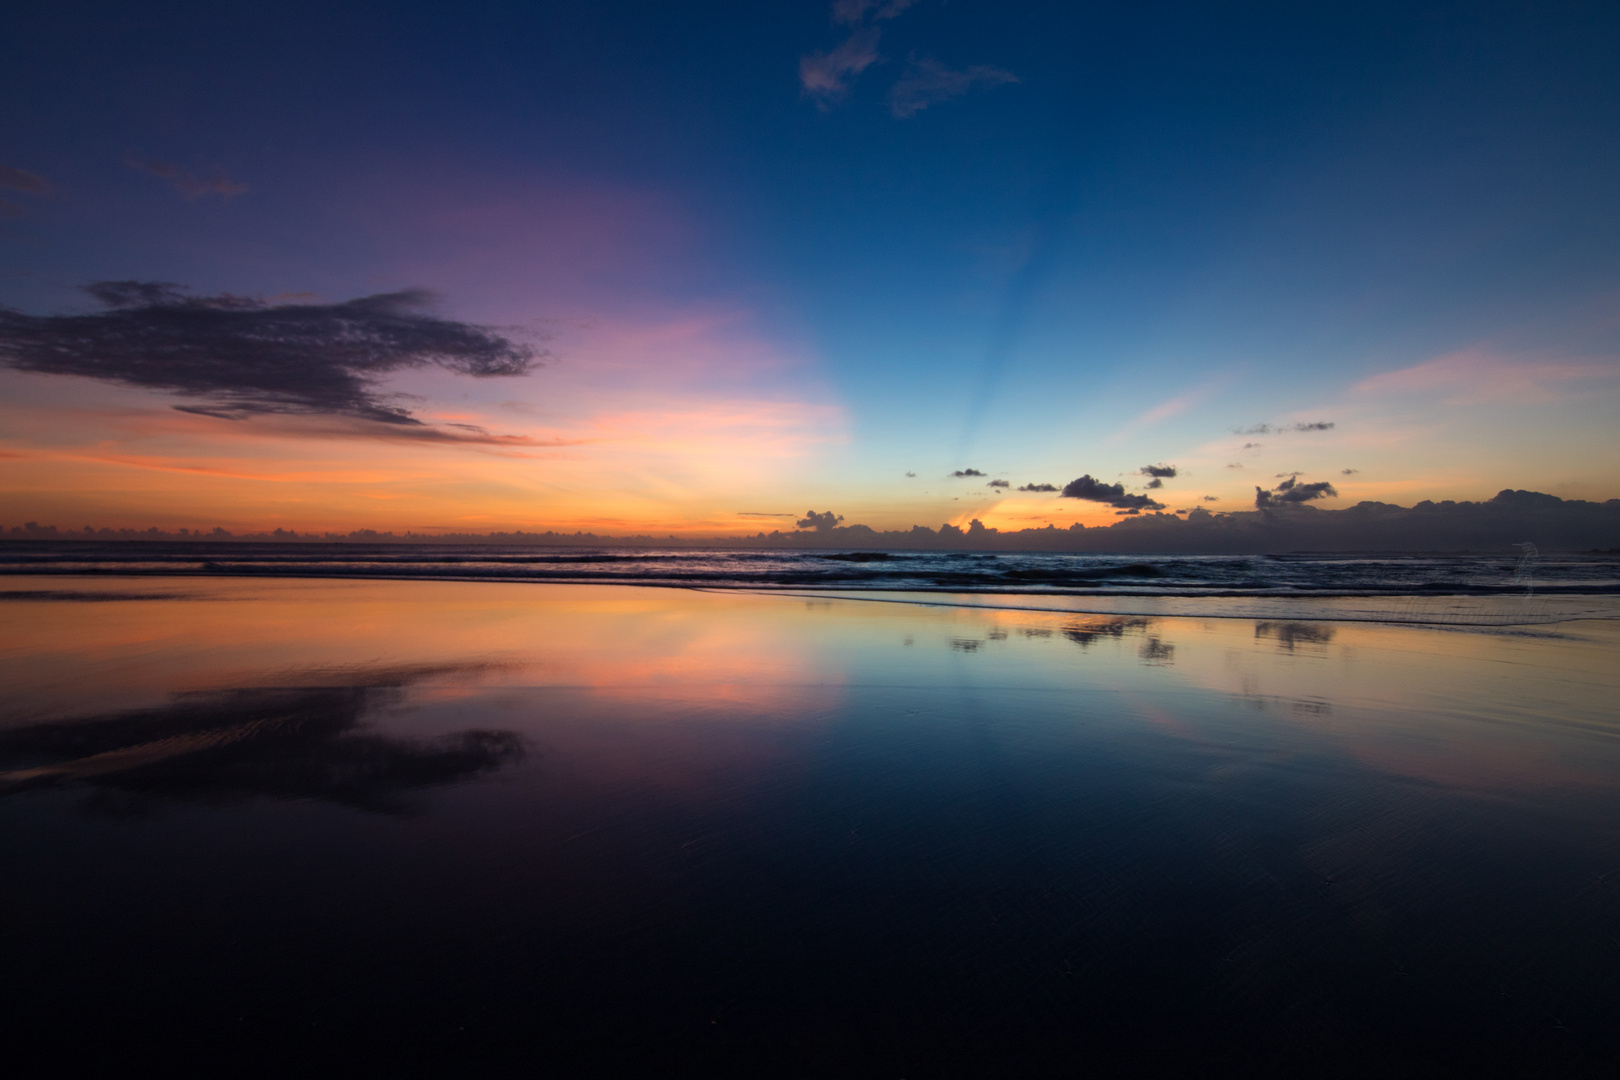 sunset - Bali 2016